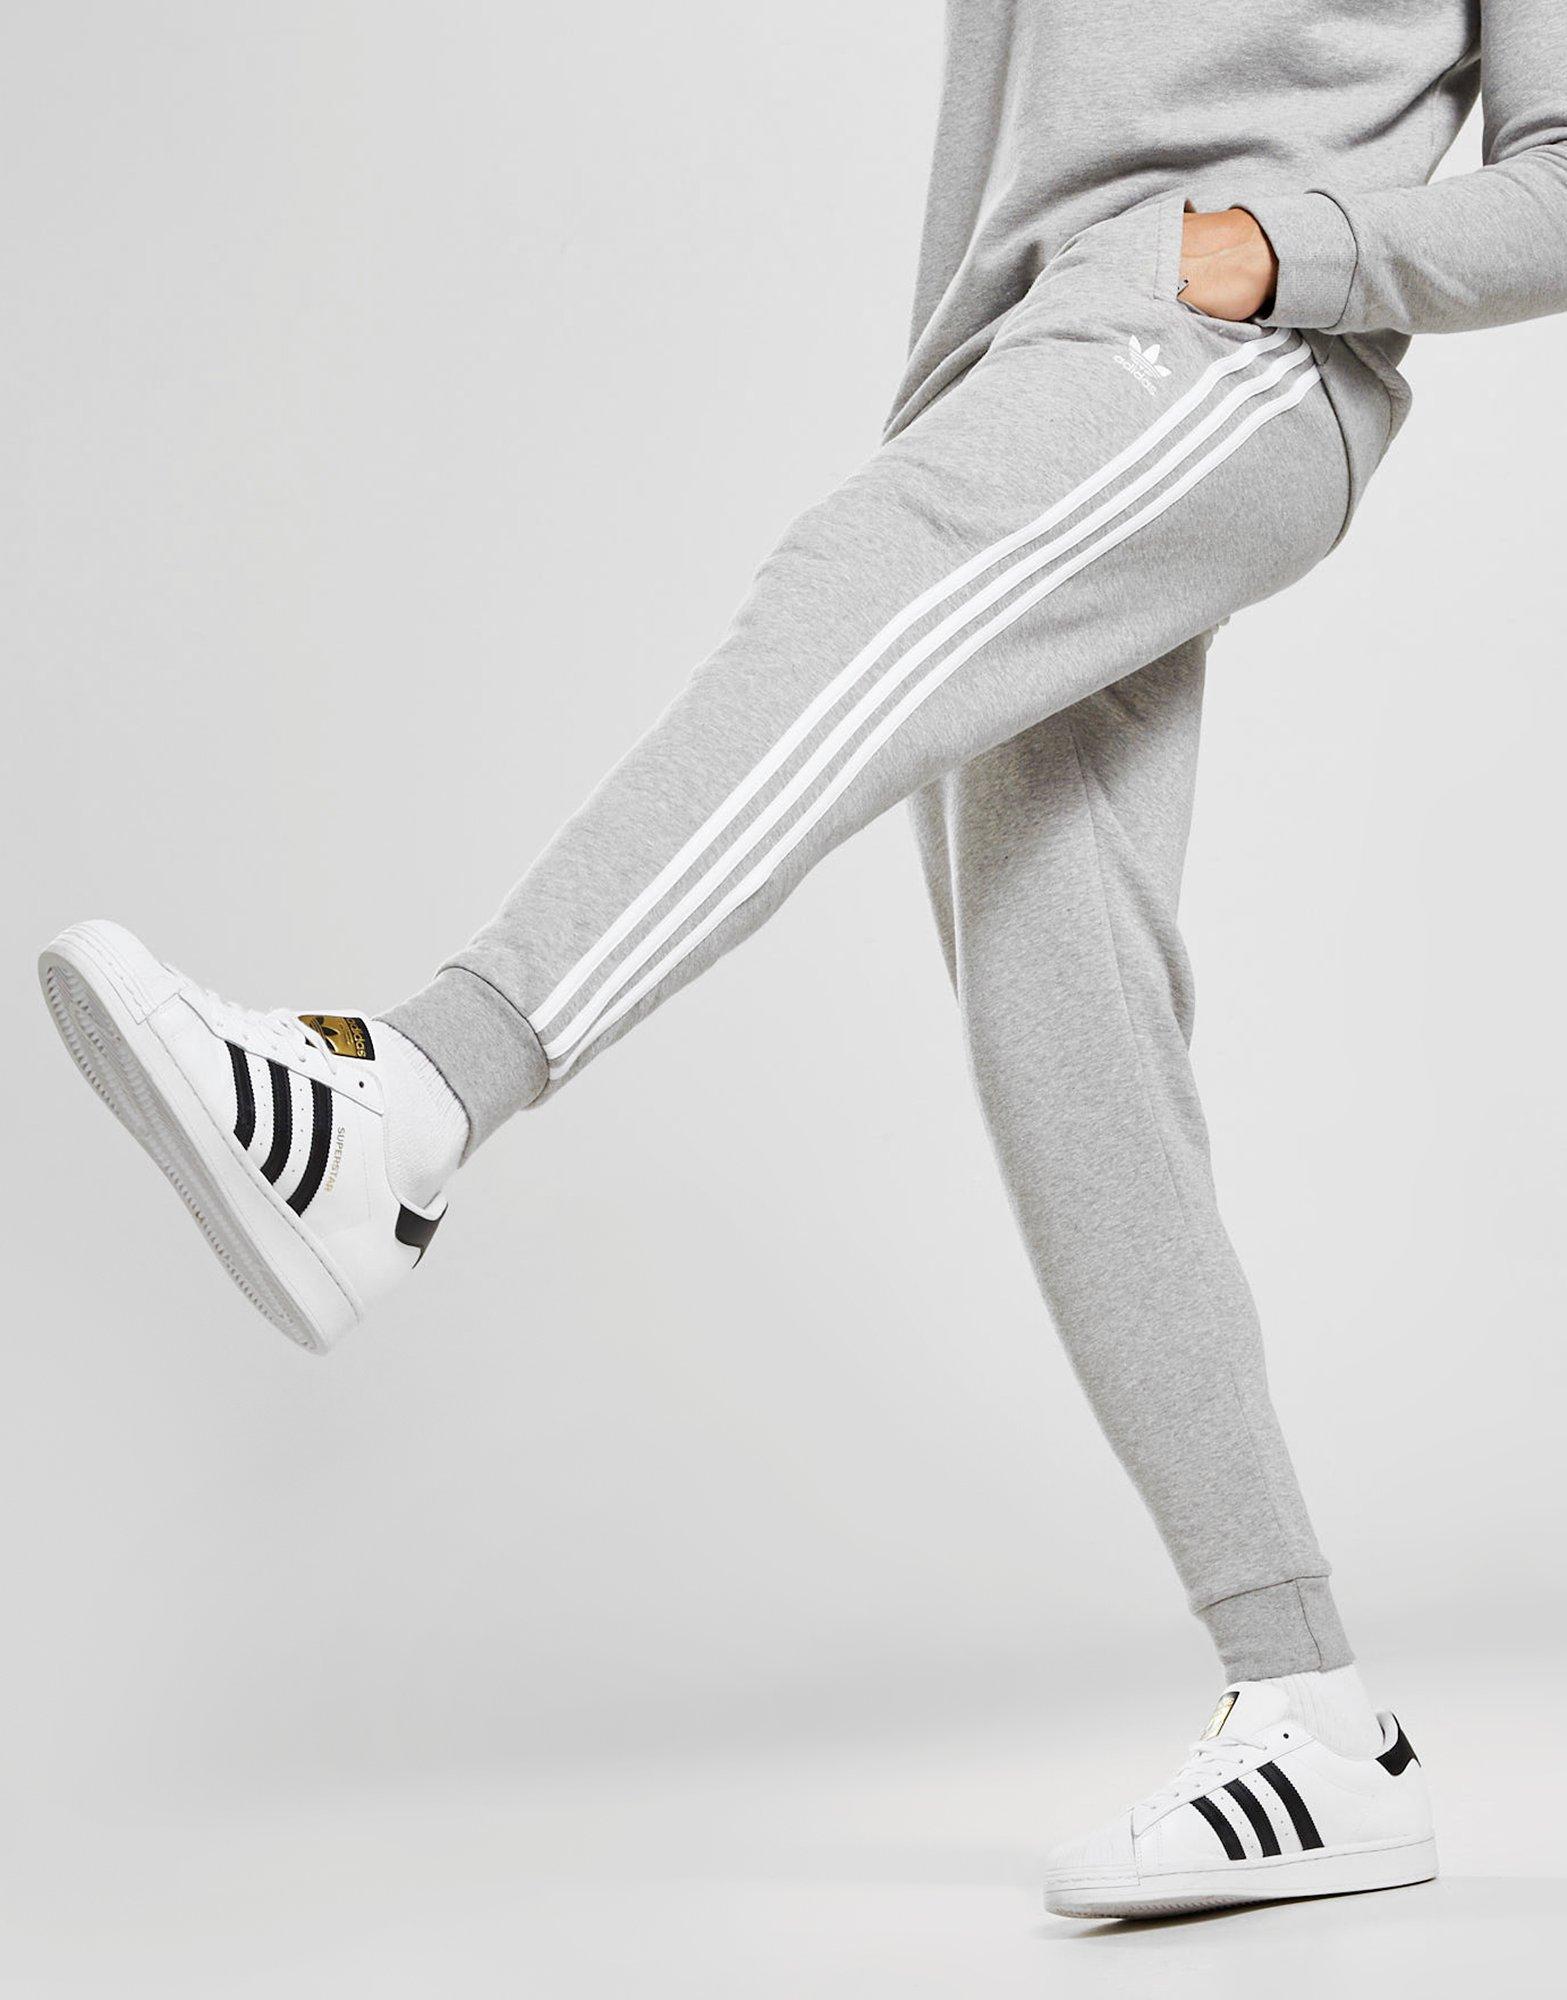 adidas grey joggers white stripes